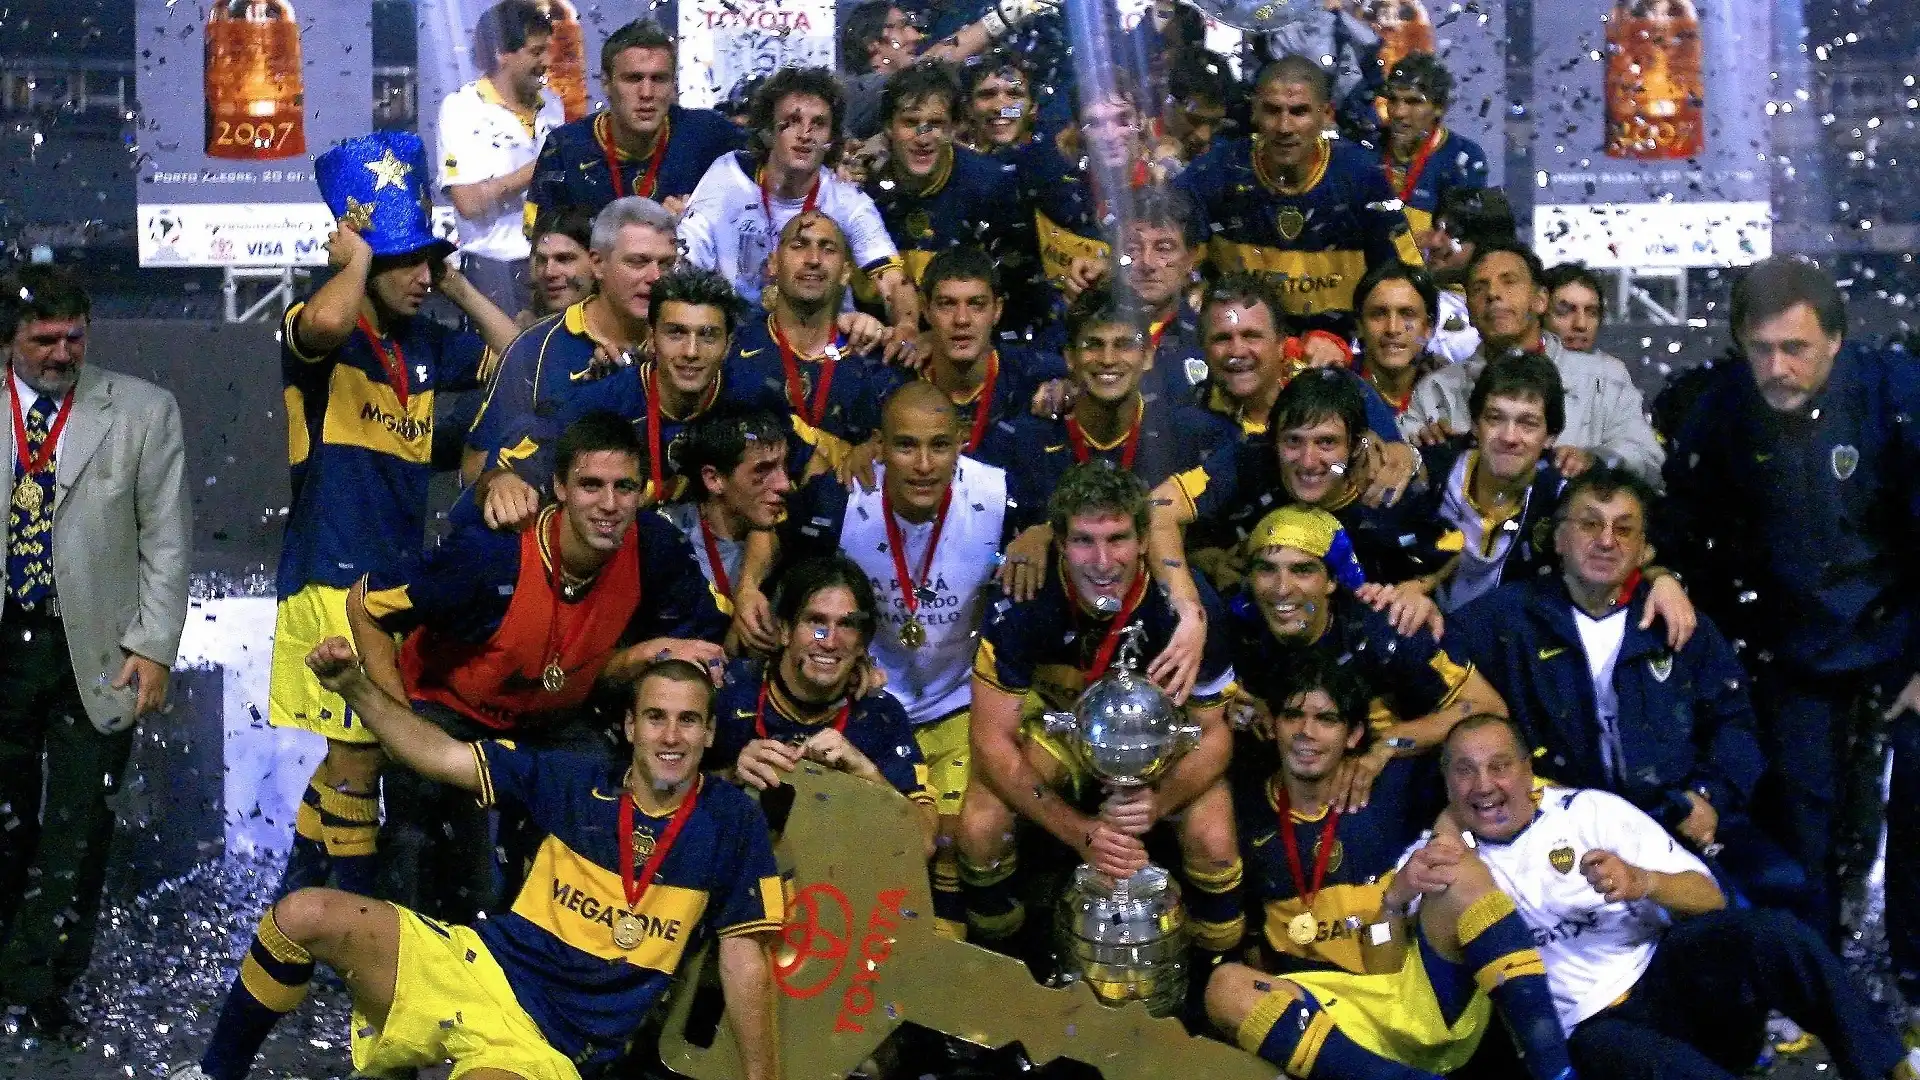 4) Boca Juniors (Argentina): 18 trofei (6 Coppe Libertadores, 3 Coppe Intercontinentali, 2 Coppe Sudamericane, 1 Supercoppa sudamericana, 4 Recopa Sudamericana, 1 Coppa d'oro, 1 Copa Master de Supercopa)